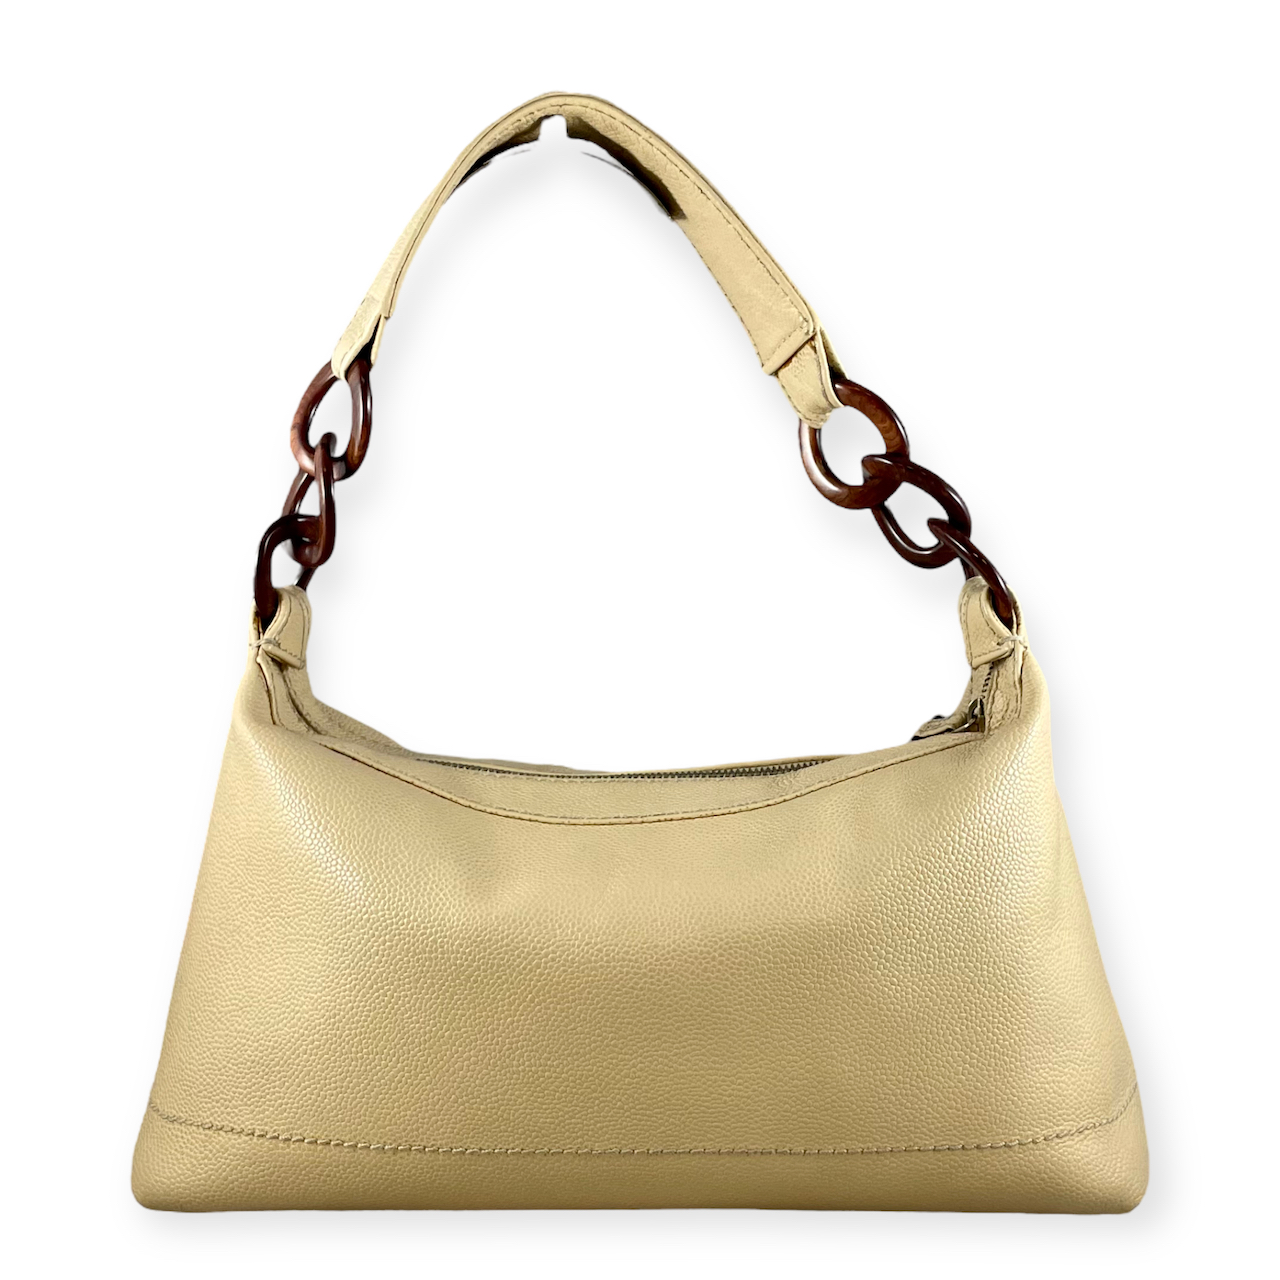 Chanel Wood Link Shoulder Bag in Beige